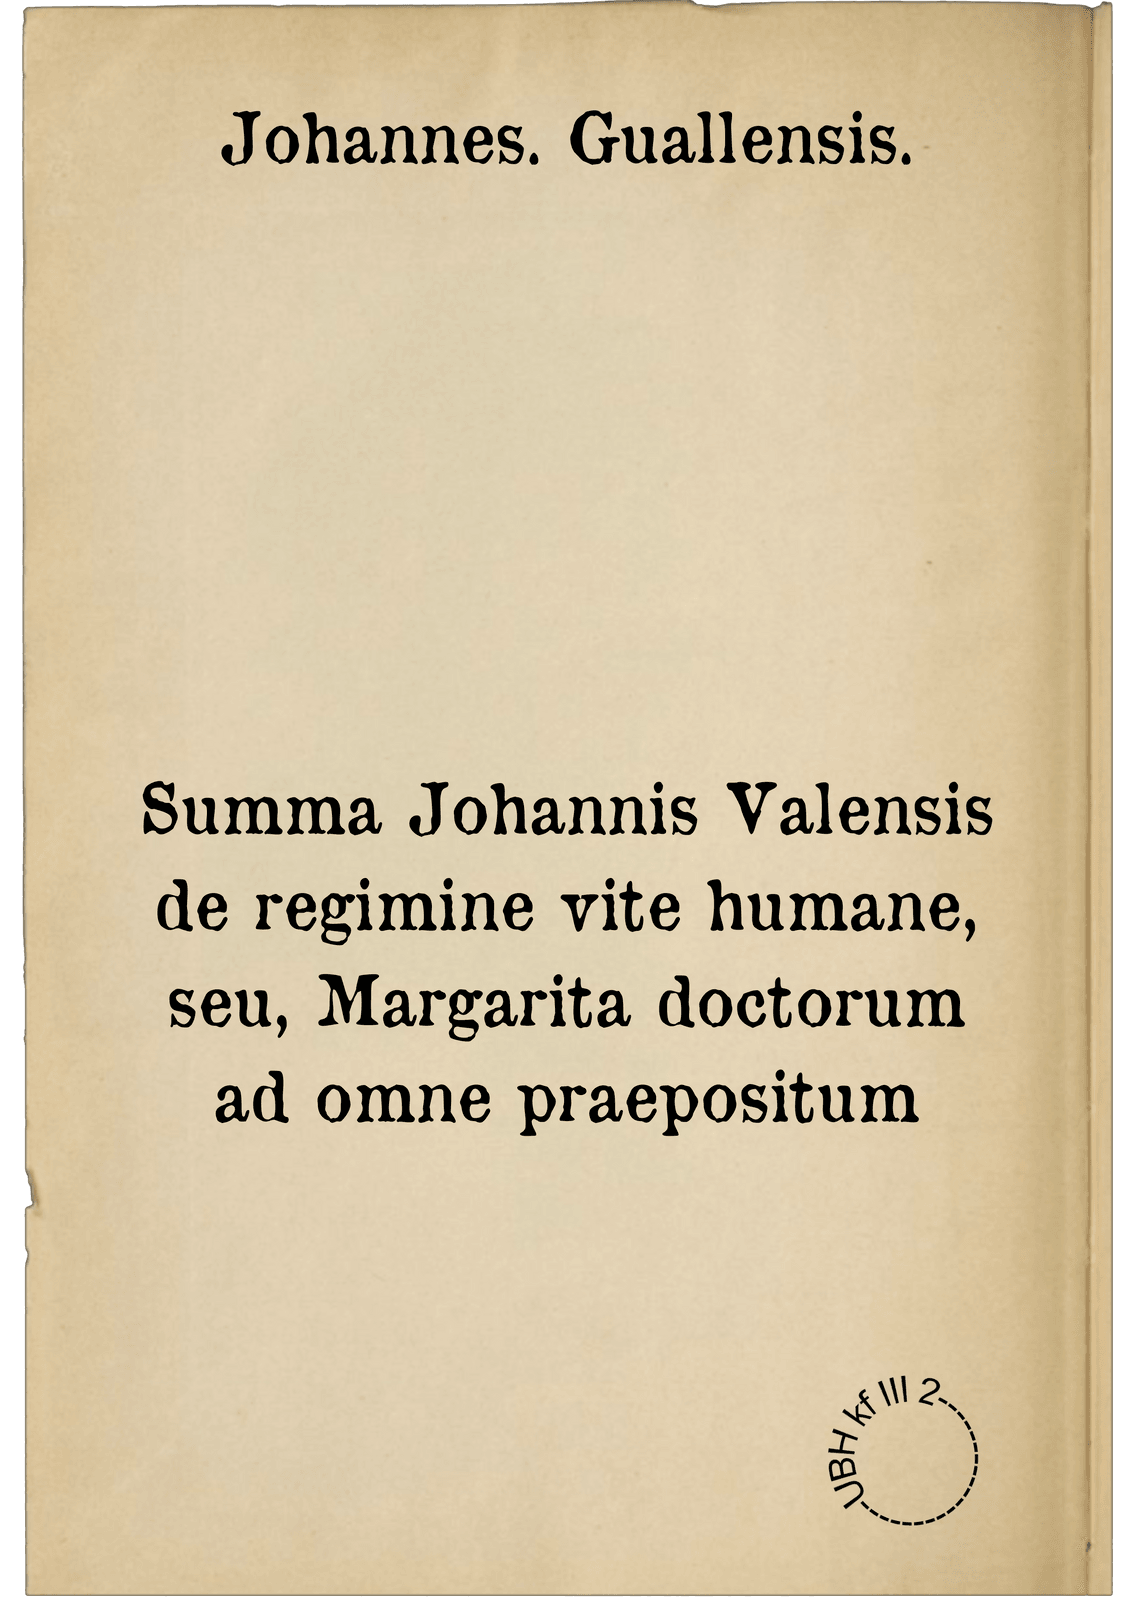 Summa Johannis Valensis de regimine vite humane, seu, Margarita doctorum ad omne praepositum